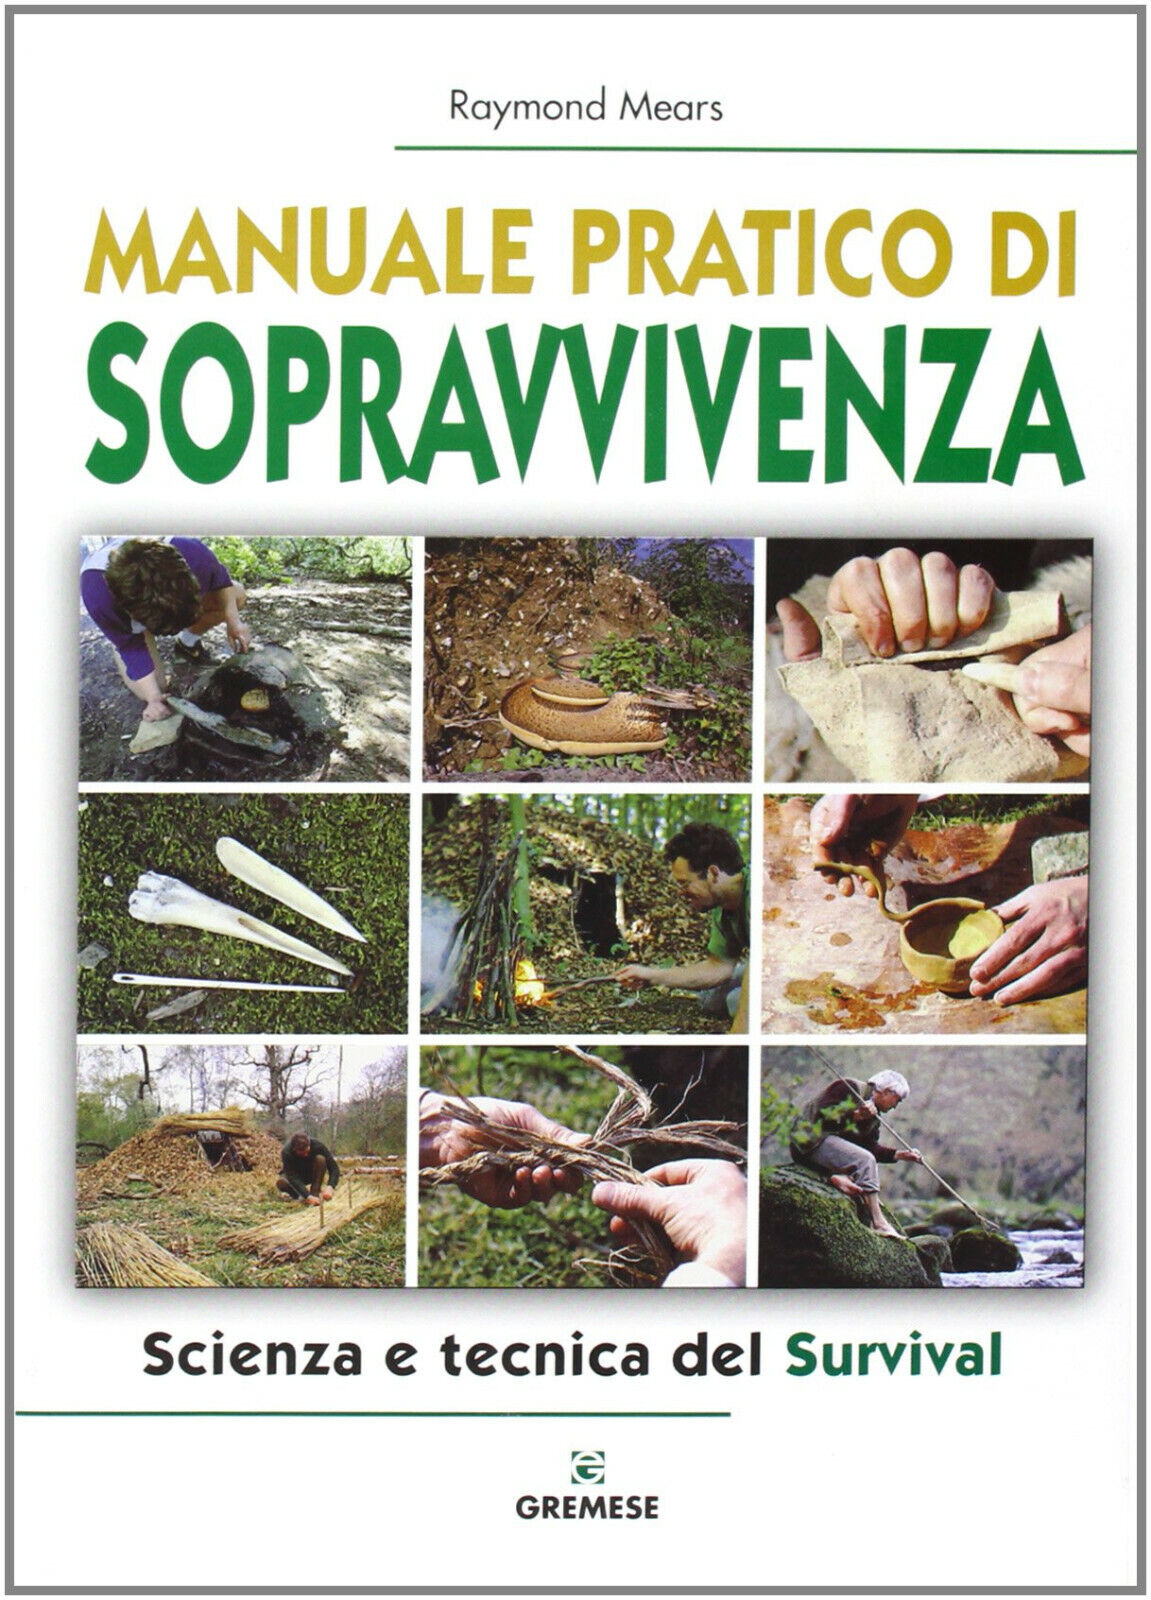 Manuale pratico di sopravvivenza - Raymond Mears - Gremese Editore, 2008 libro usato